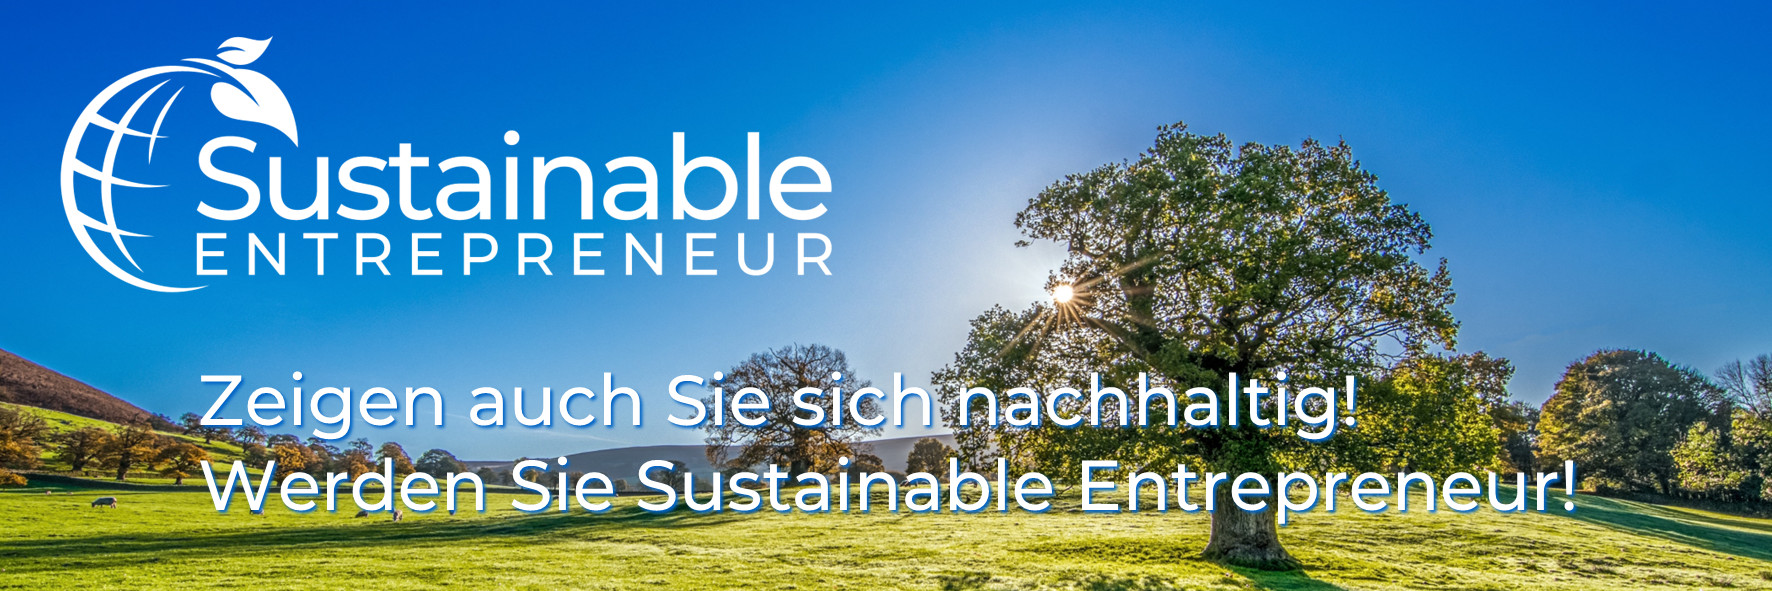 Header2_Sustainable_Entrepreneur_Zeigen_Sie_sich_nachhaltig